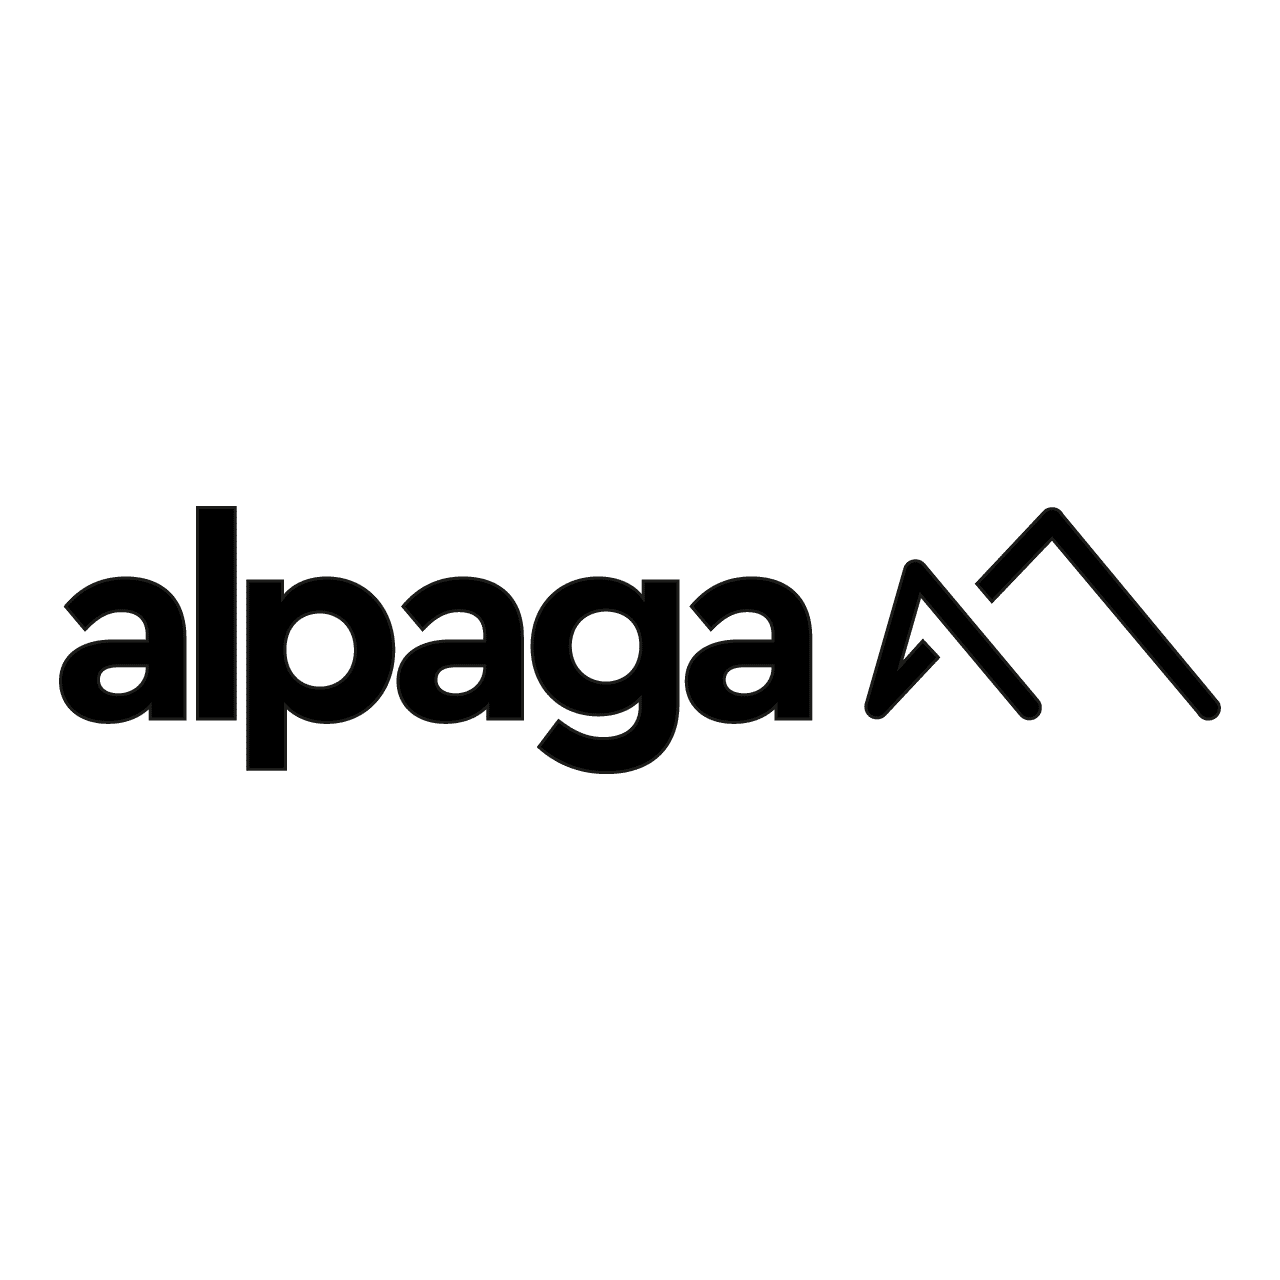 Alpaga Agency